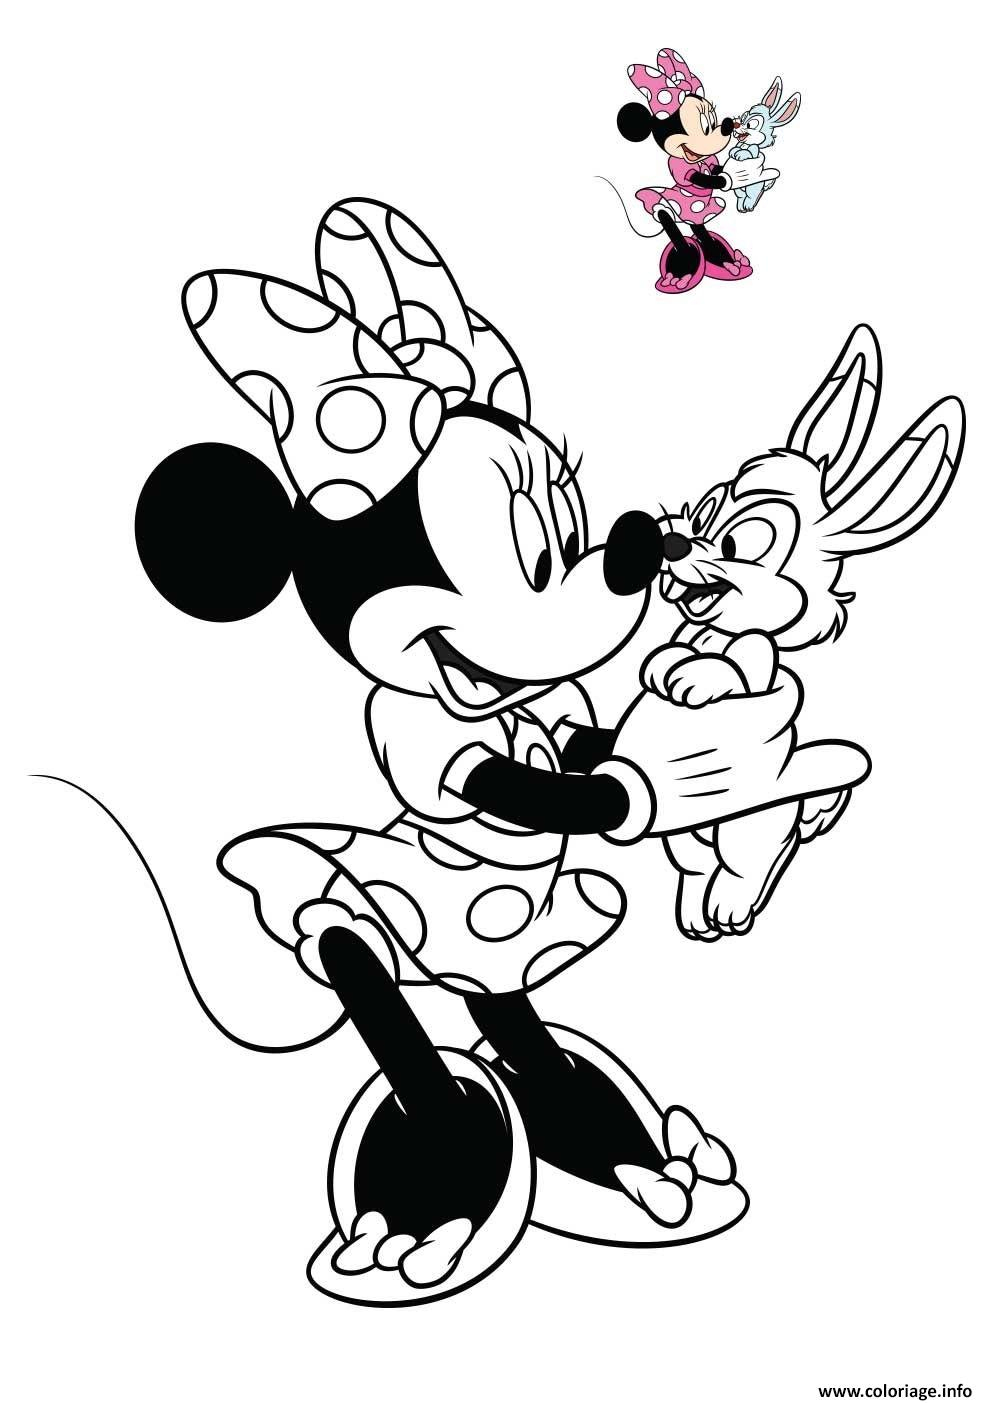 Coloriage Minnie Mouse Souris Anthropomorphe Dessin Disney dedans Dessin Chauve Souris À Imprimer 